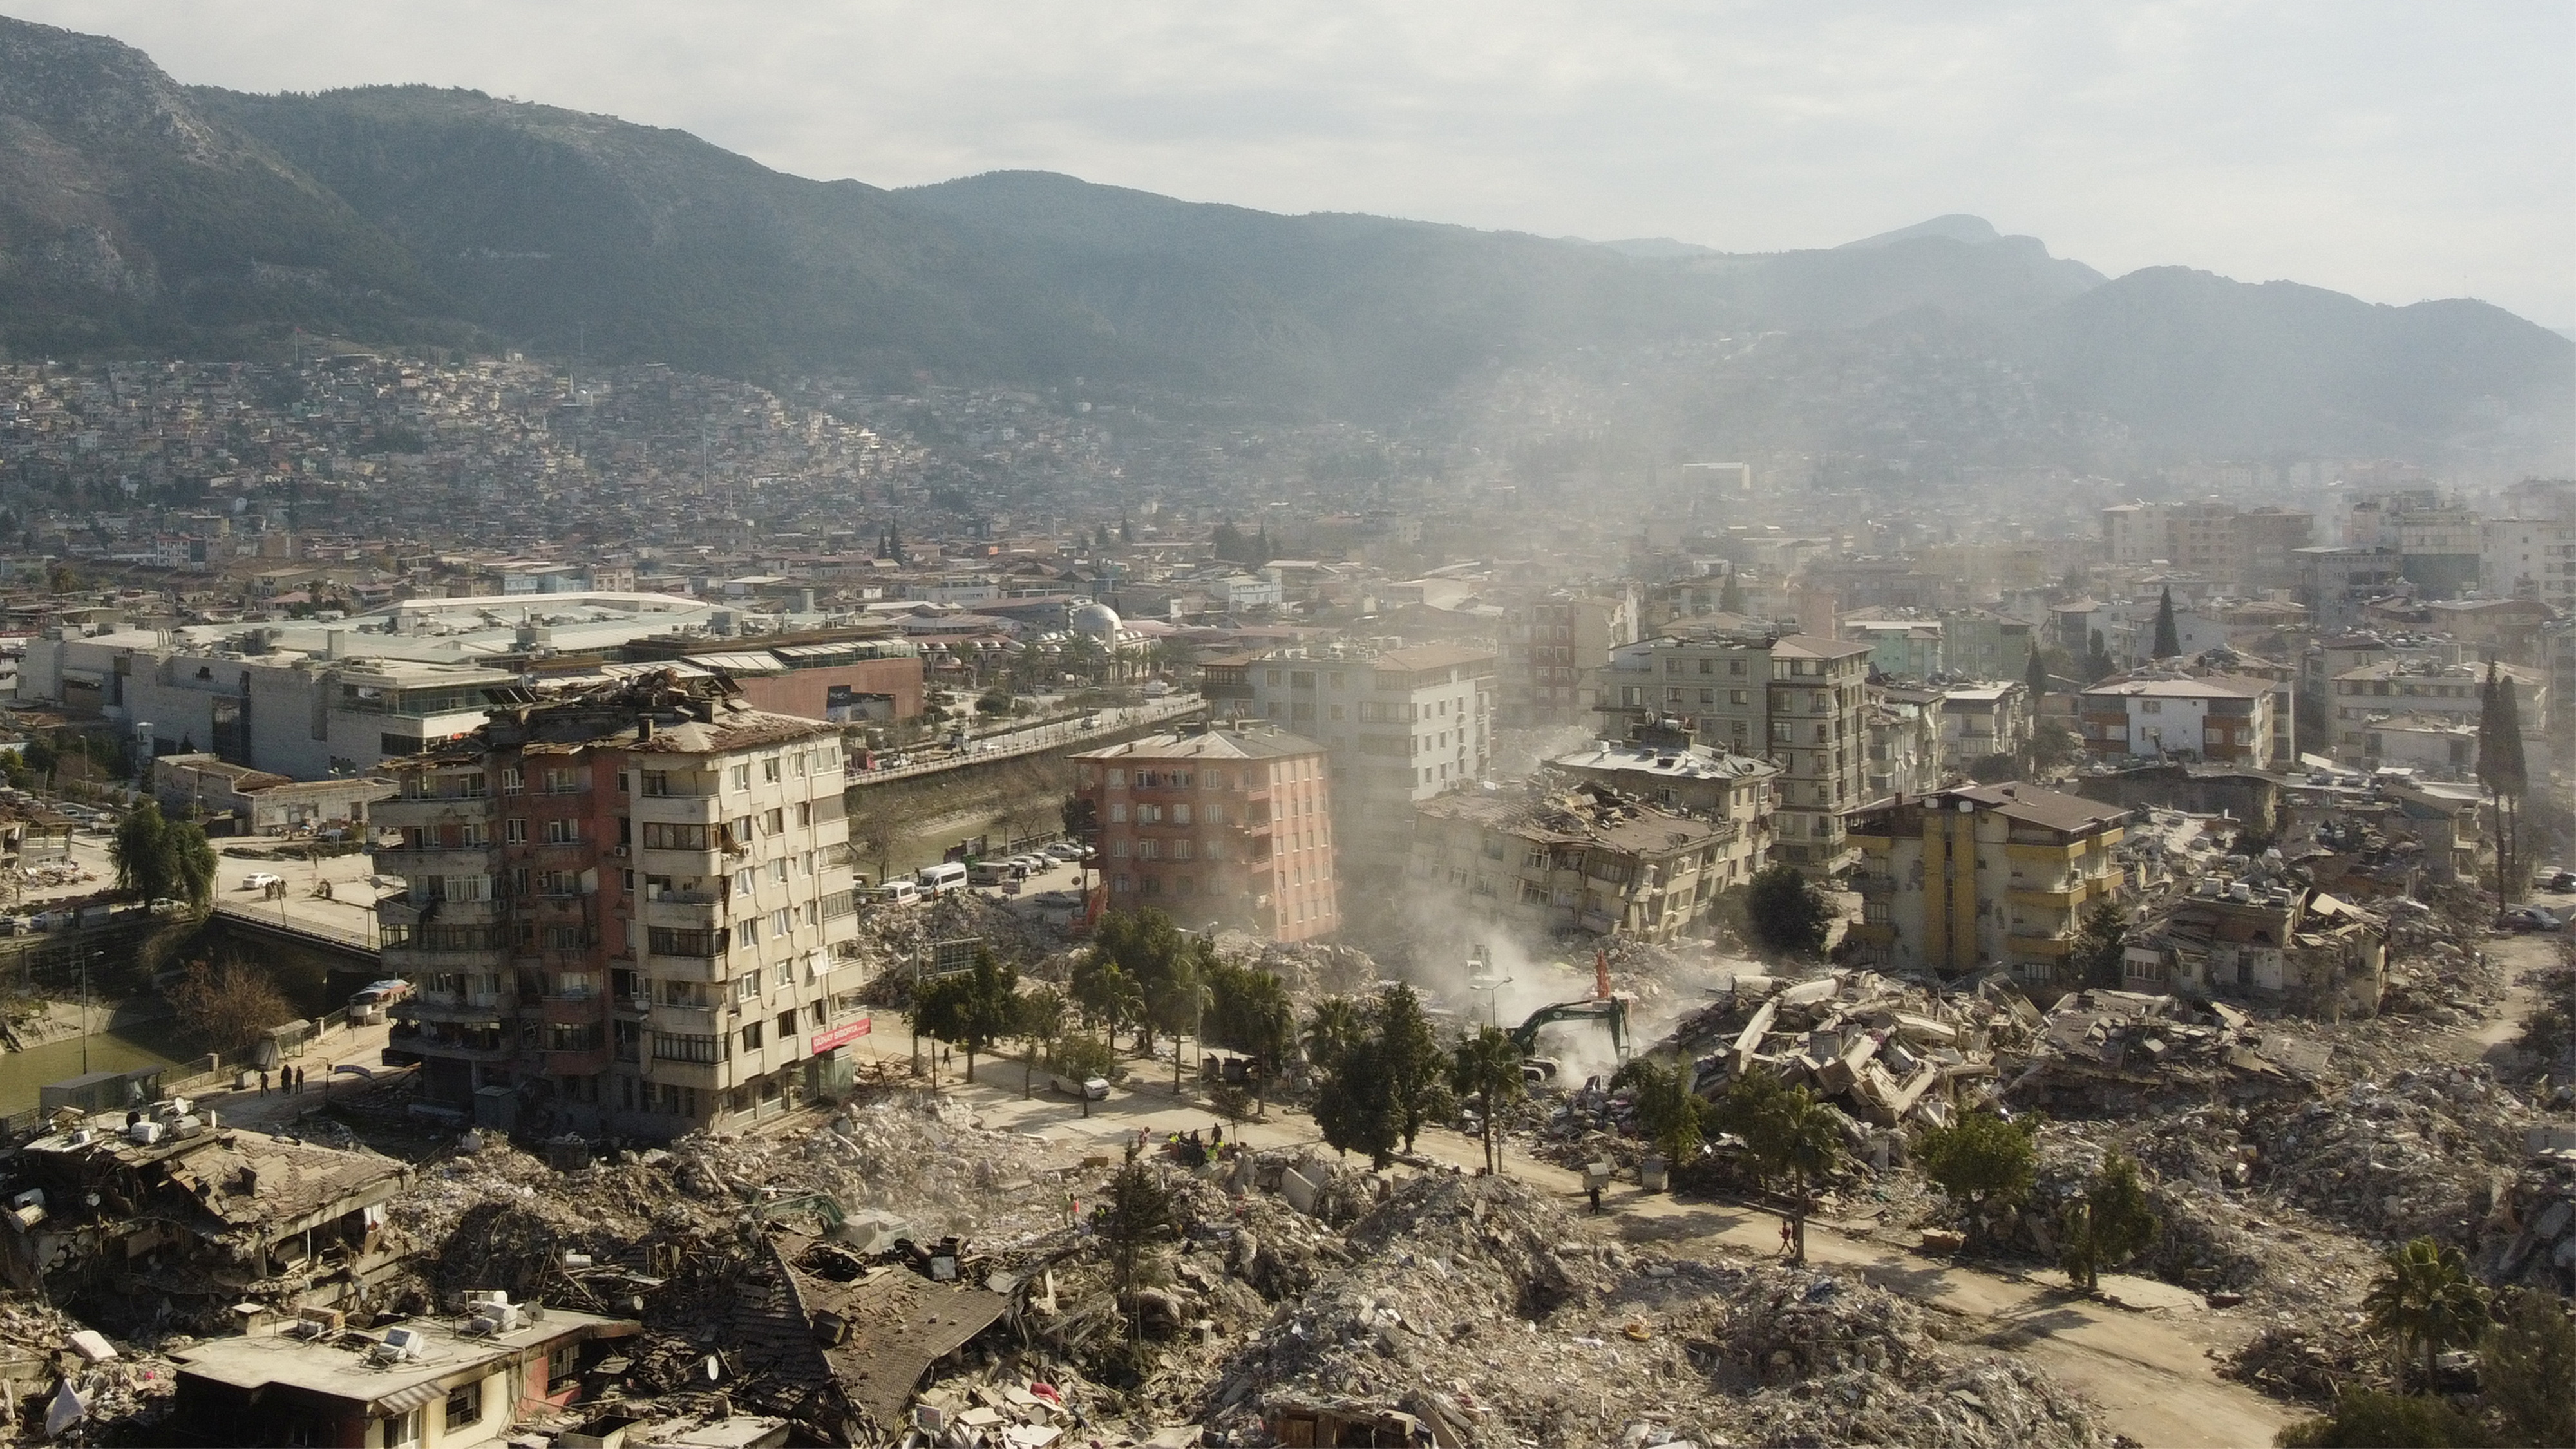 Vista general de escombros y daños tras un terremoto mortal, en Hatay, Turquía, 15 de febrero de 2023. REUTERS/Clodagh Kilcoyne